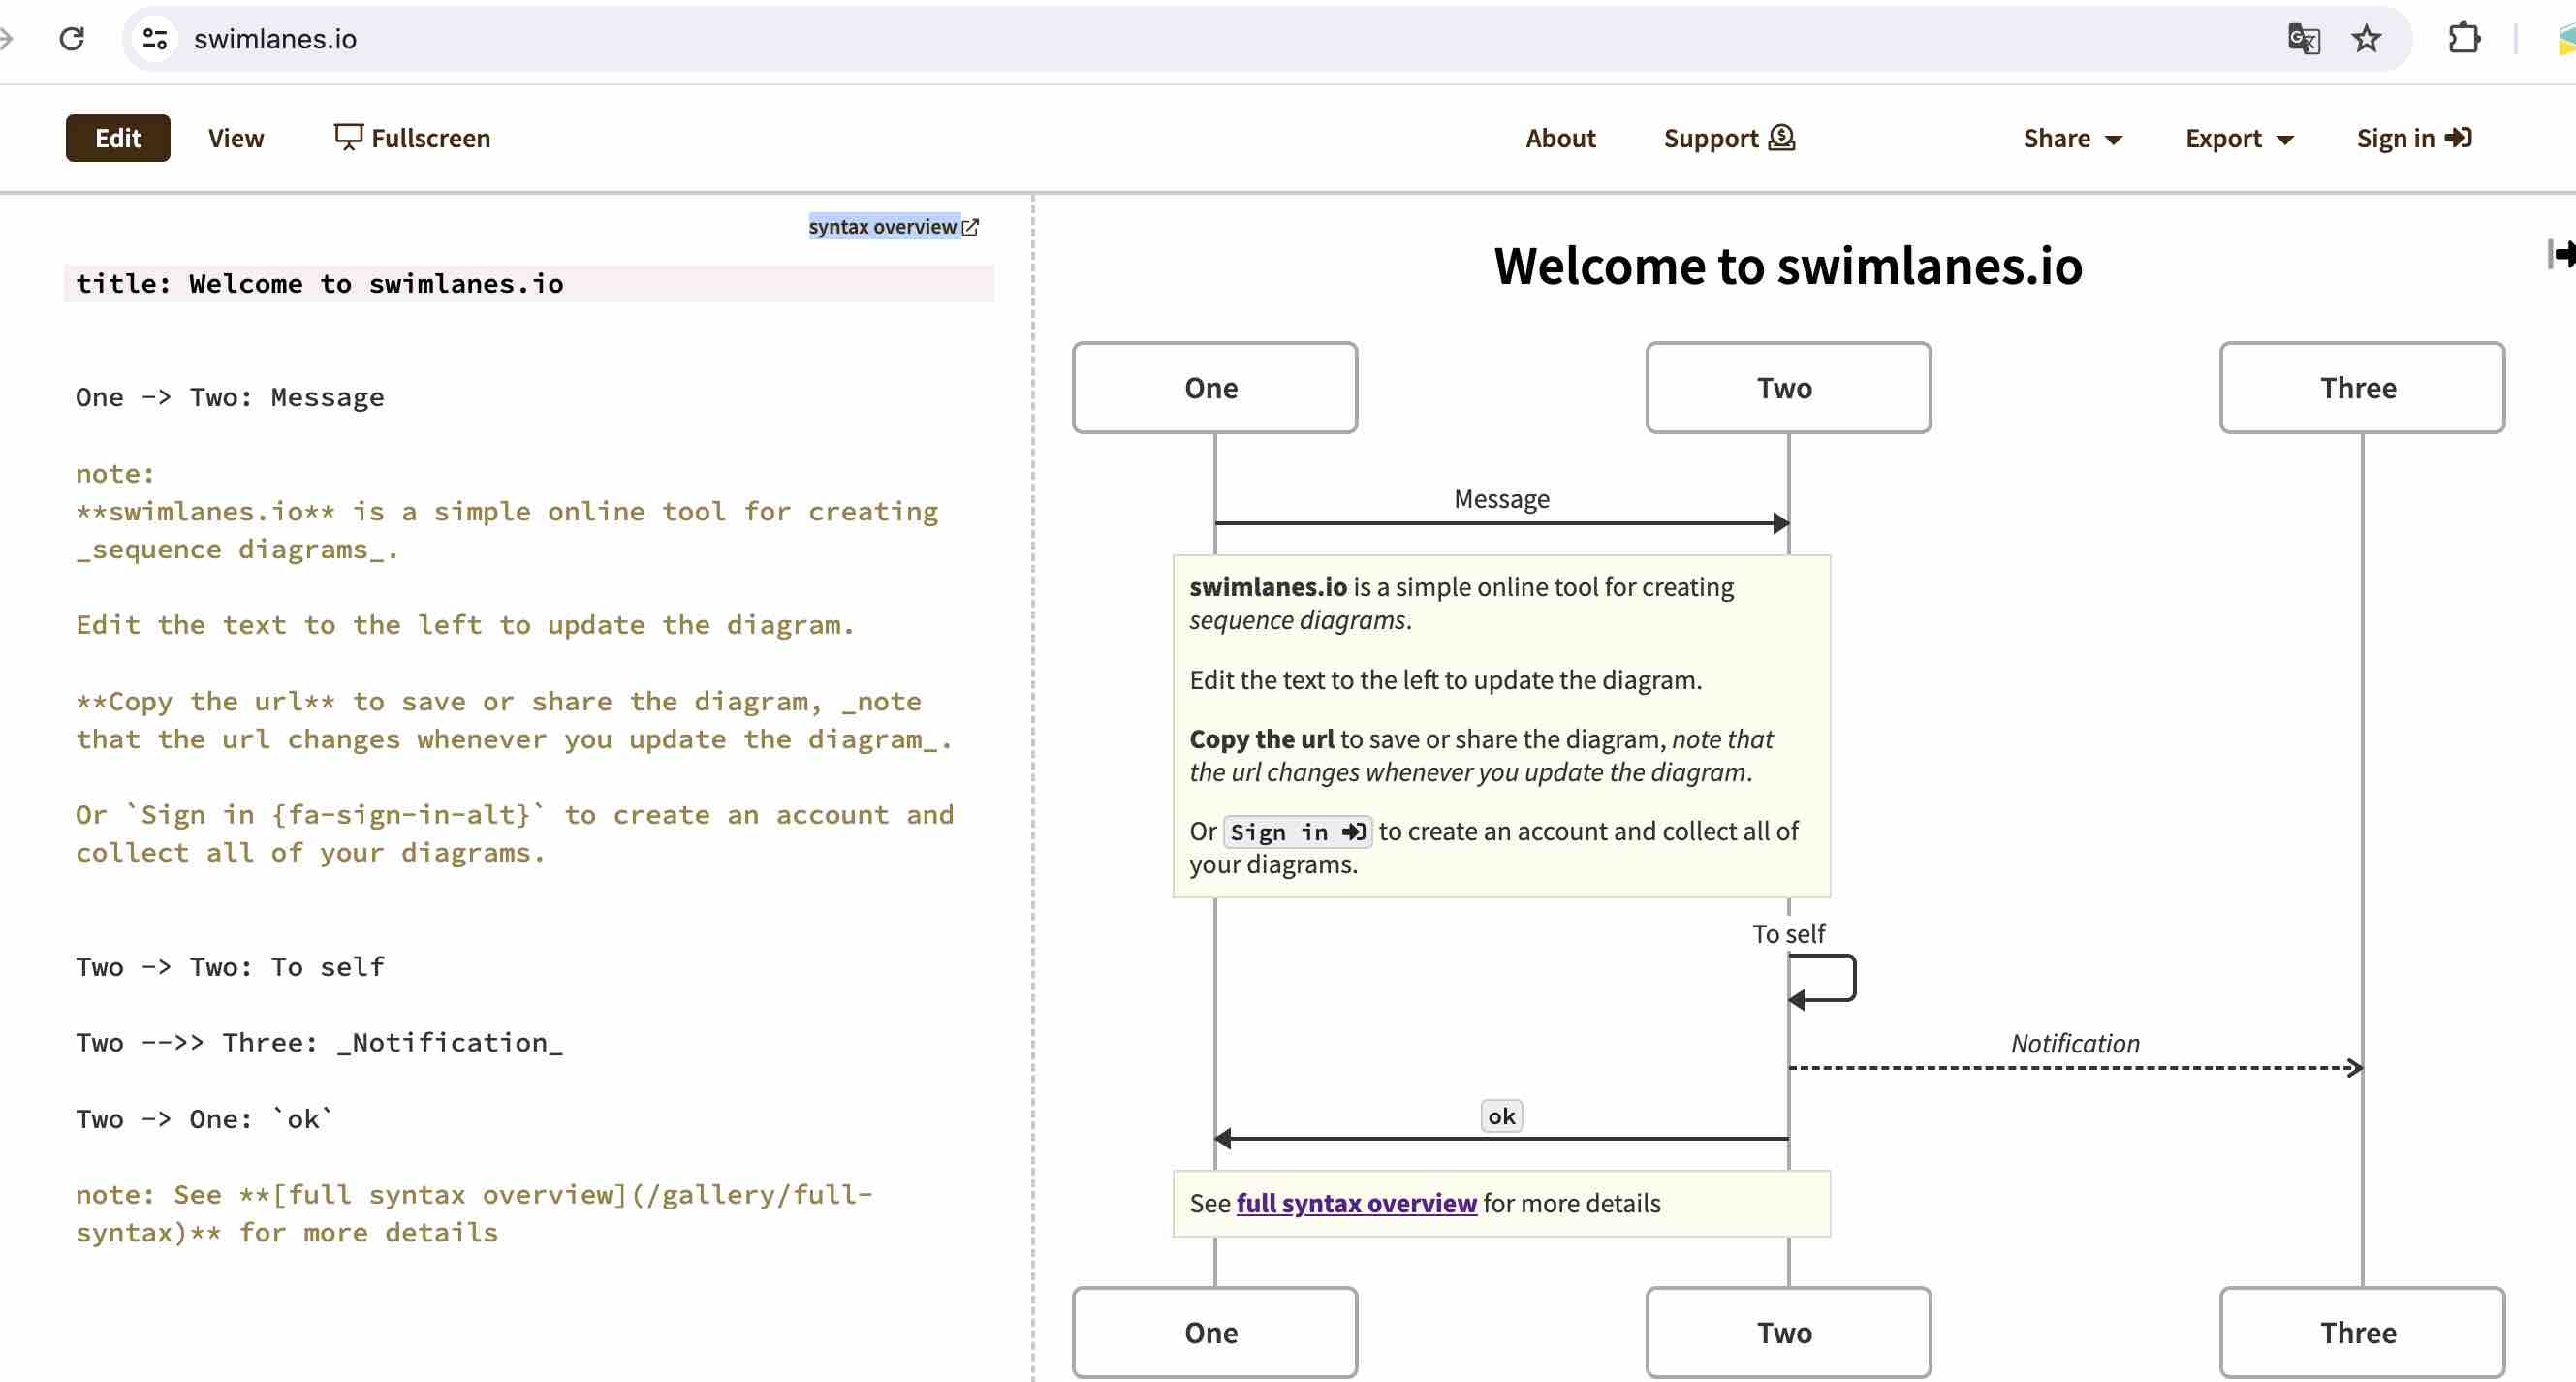 Membuat Squence Diagram Online Dengan Swimlanes.io